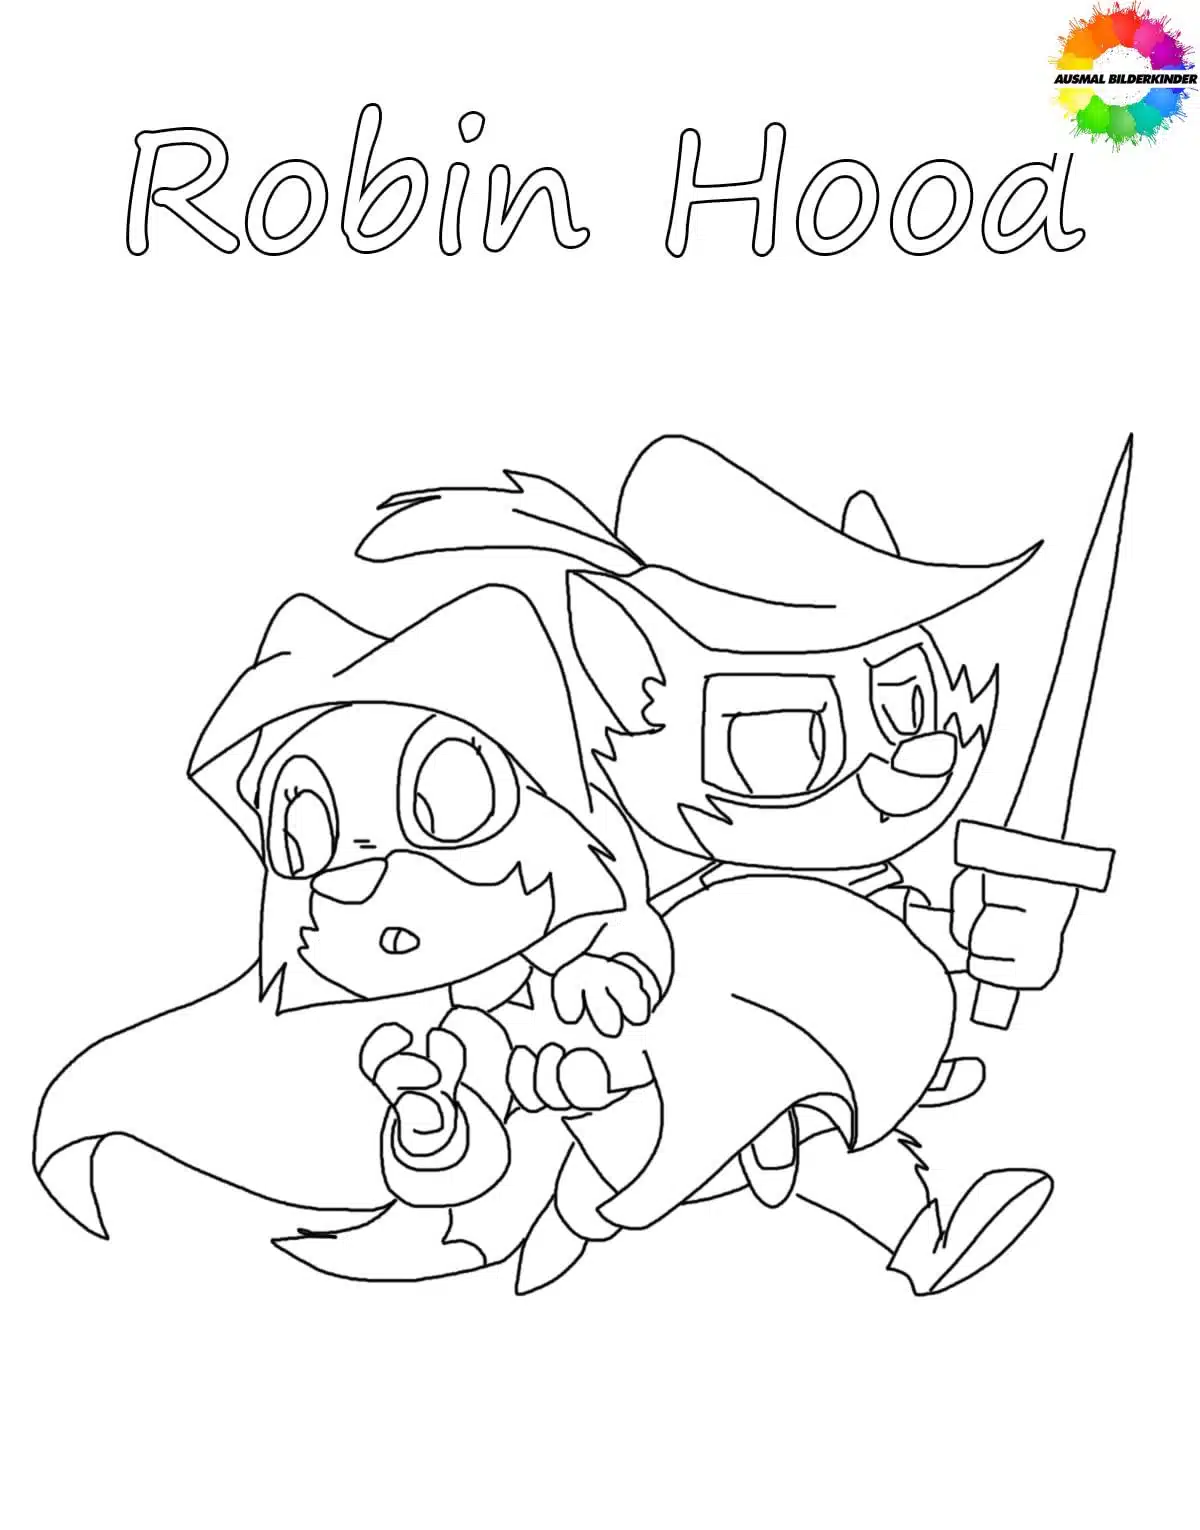 Robin Hood 19